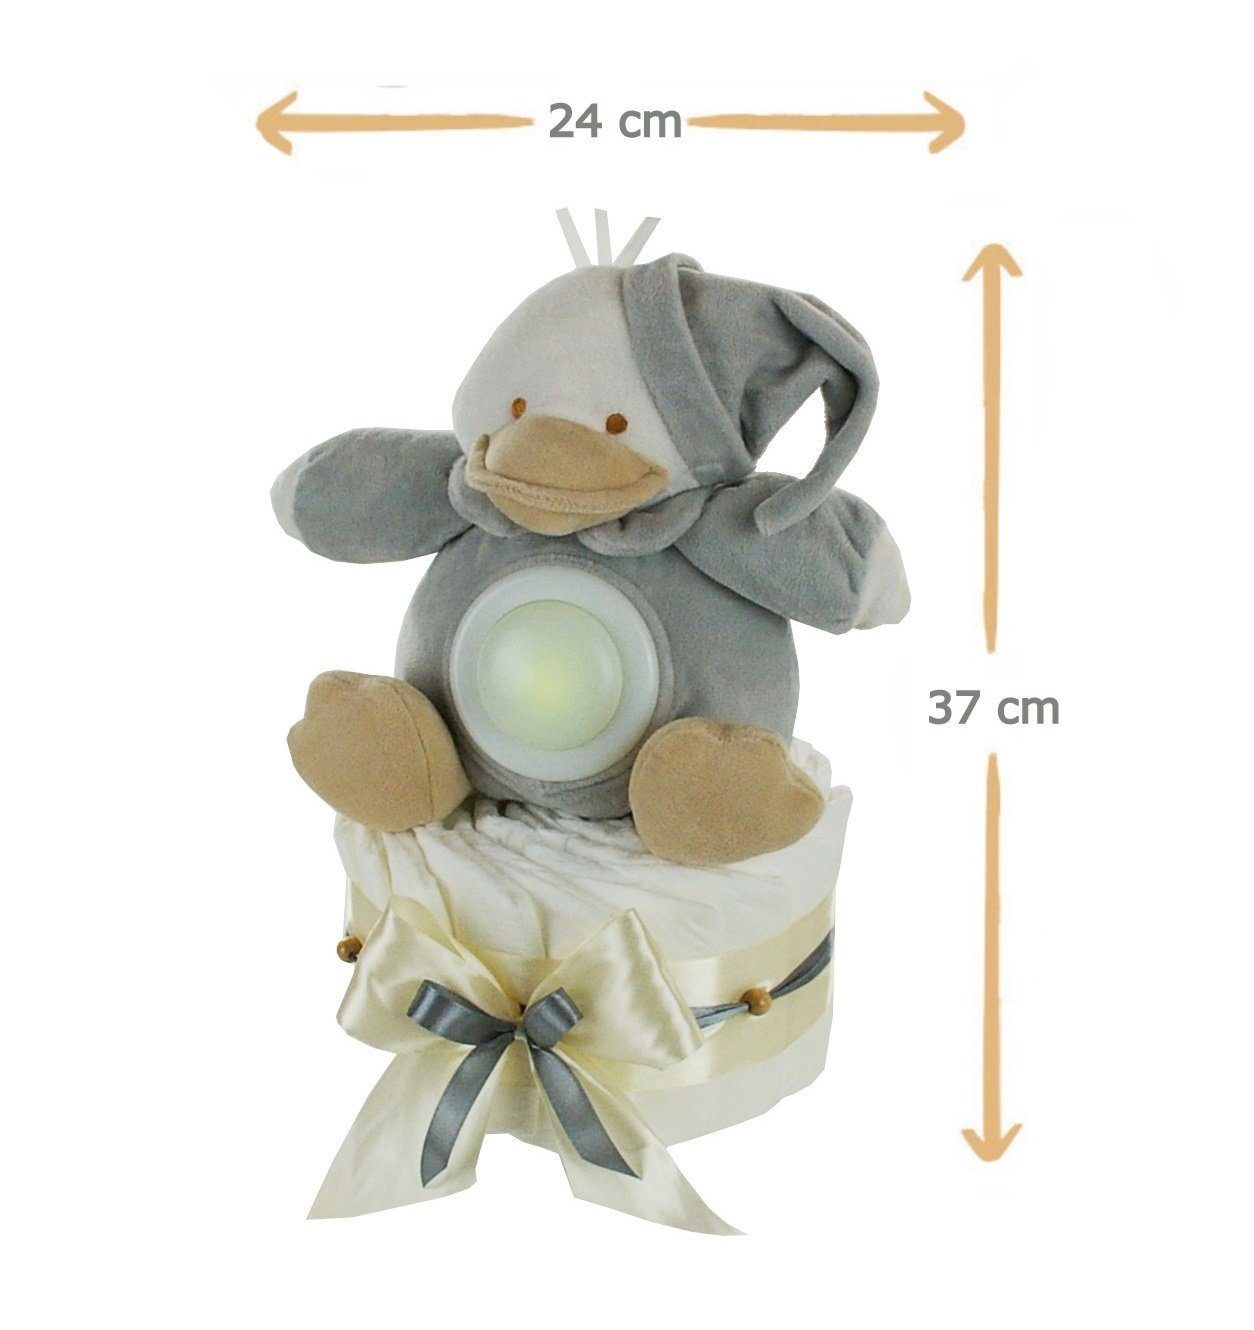 dubistda-WINDELTORTEN- Neugeborenen-Geschenkset Neutrale Windeltorte Ente Kuscheltier LED-Nachtlicht Grußkarte + 35cm